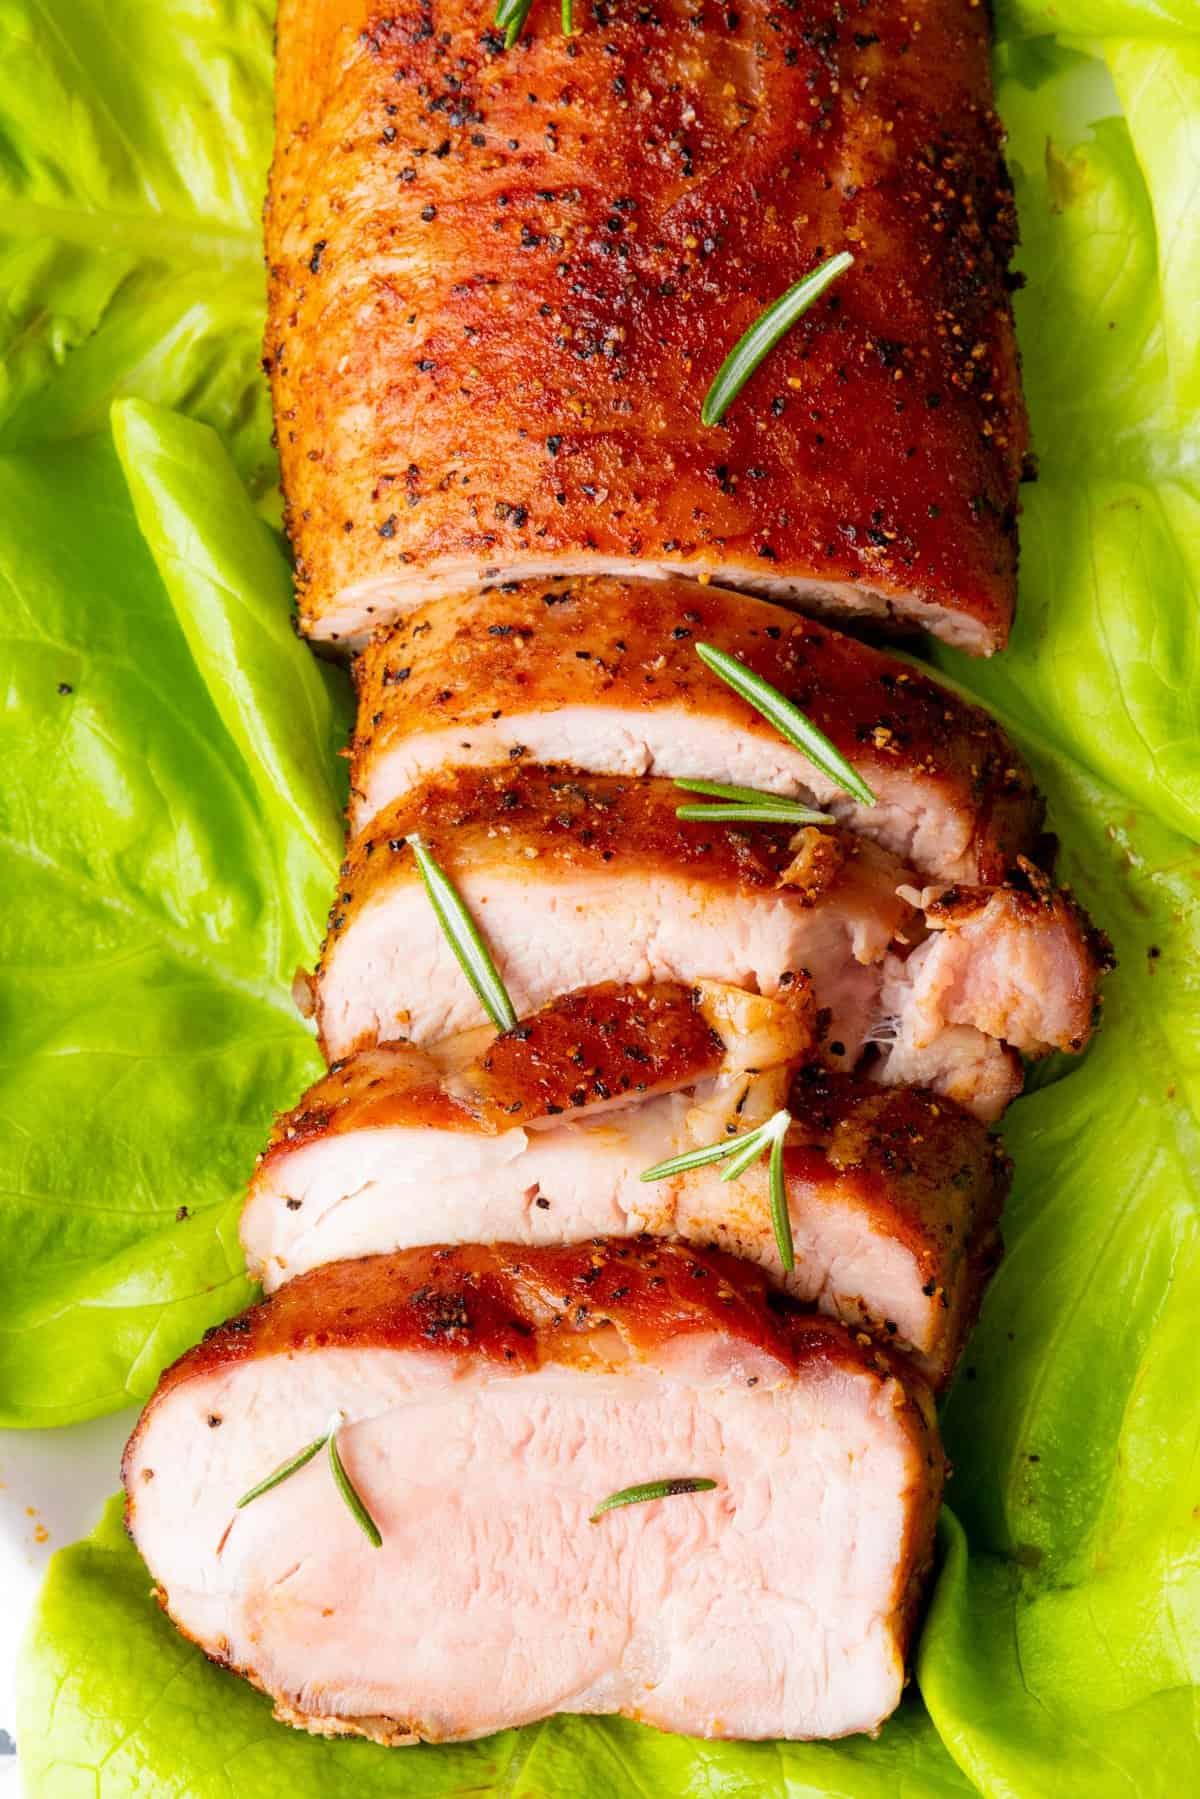 Pork tenderloin on bed of lettuce with garnish